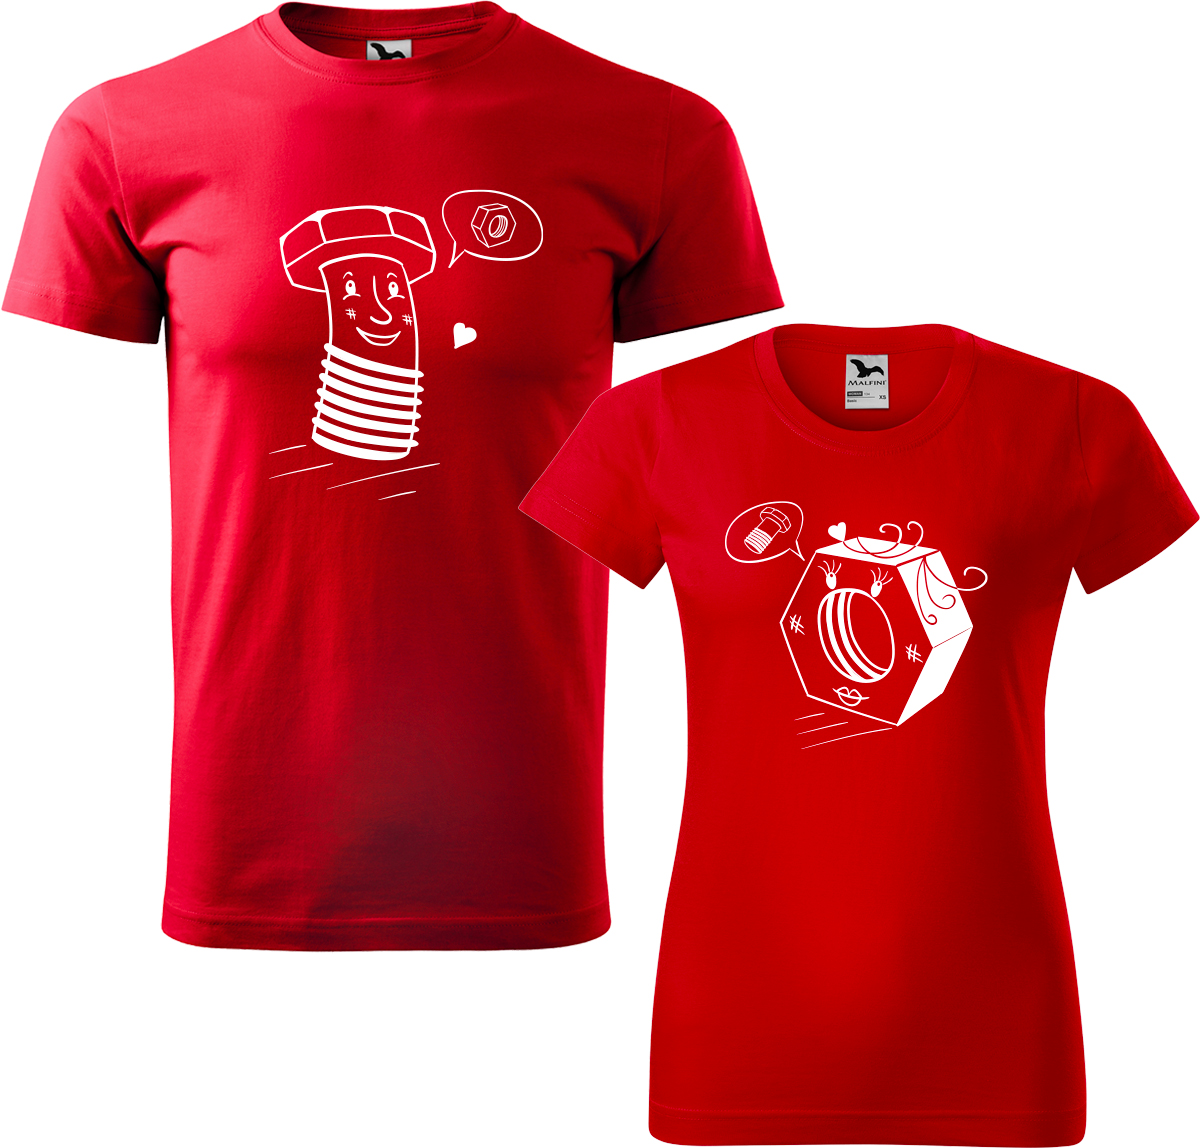 Trička pro páry - Šroubek a matička Barva: Červená (07), Velikost dámské tričko: 3XL, Velikost pánské tričko: 3XL